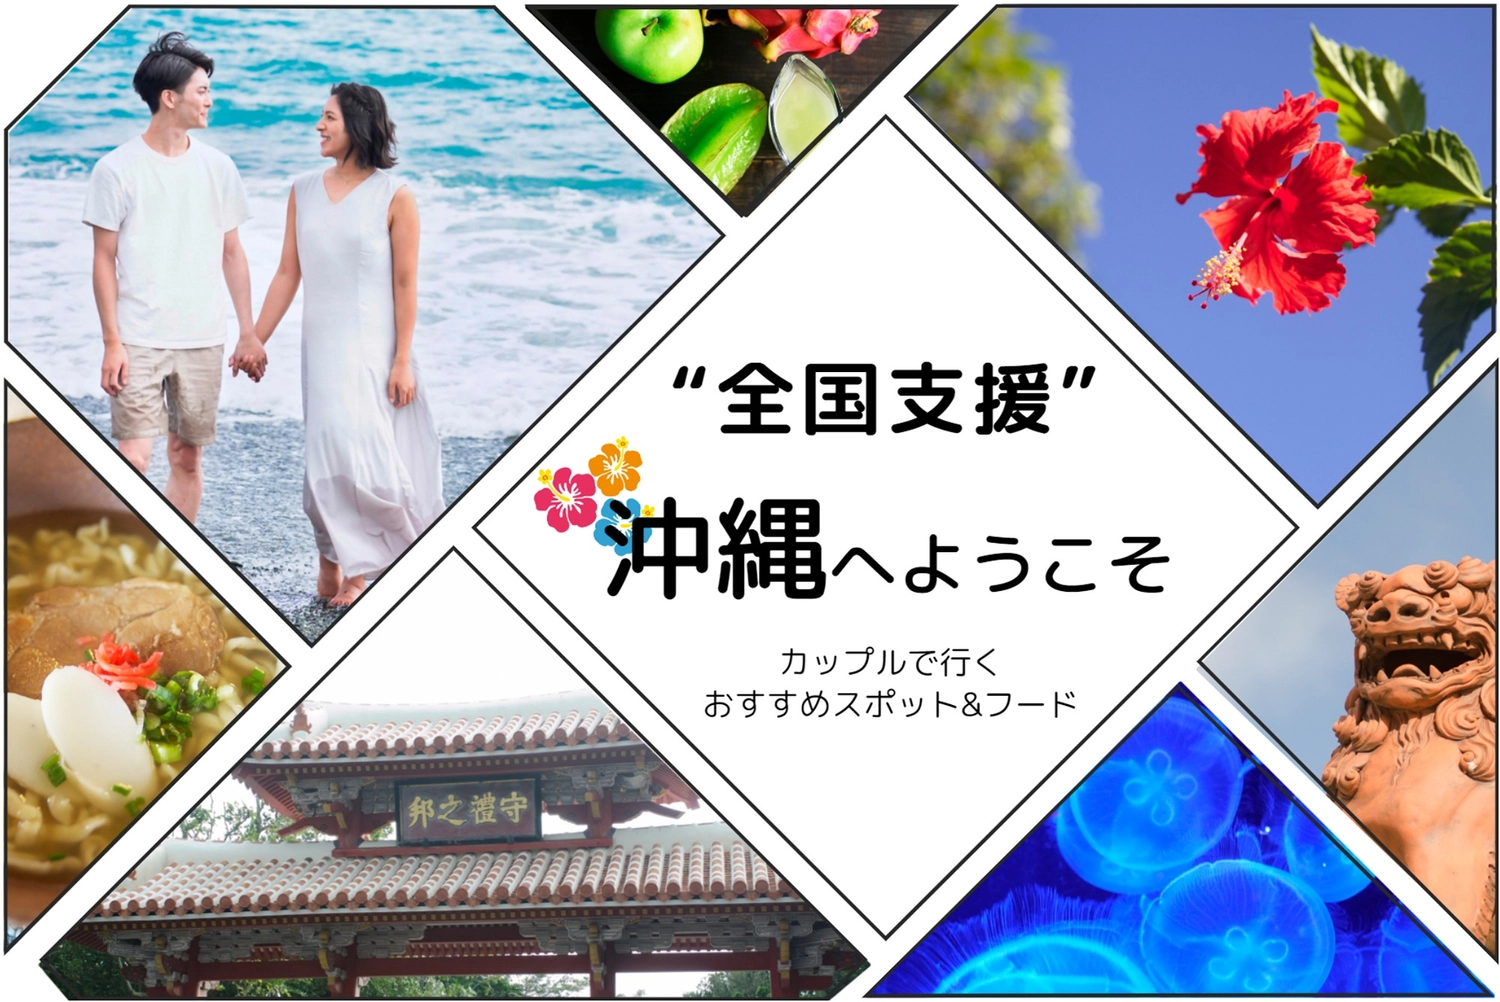 沖縄旅行写真の全国支援バナー, stay, day trip, travel agency, Banner template